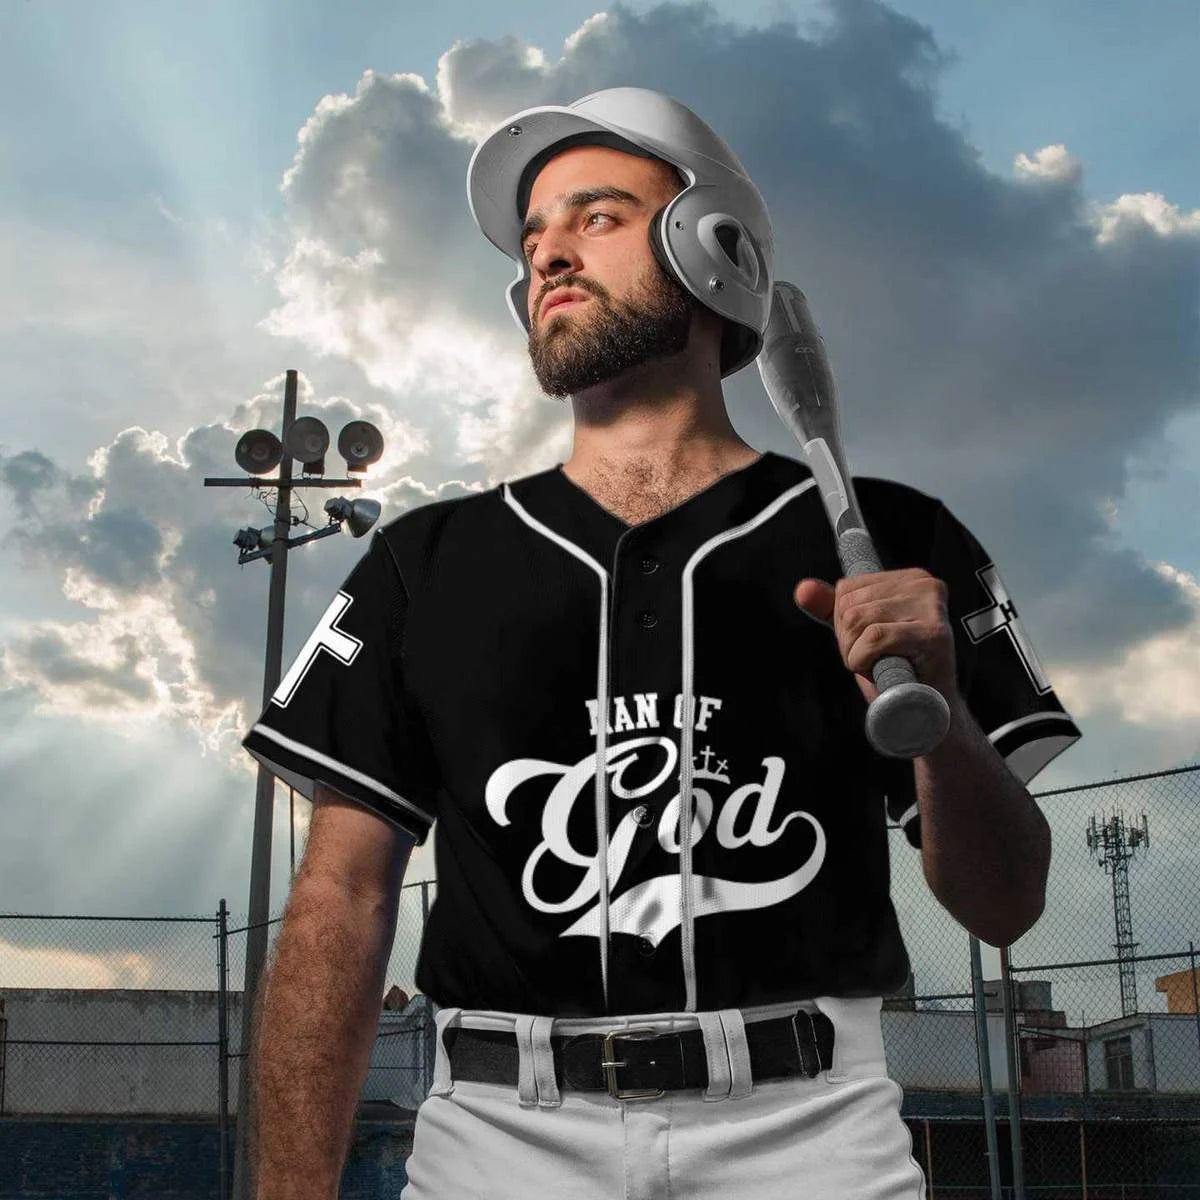 Customized Baseball Jersey Shirt - Personalized Name Man of God Baseball Jersey Shirt For Christian, Baseball Lover